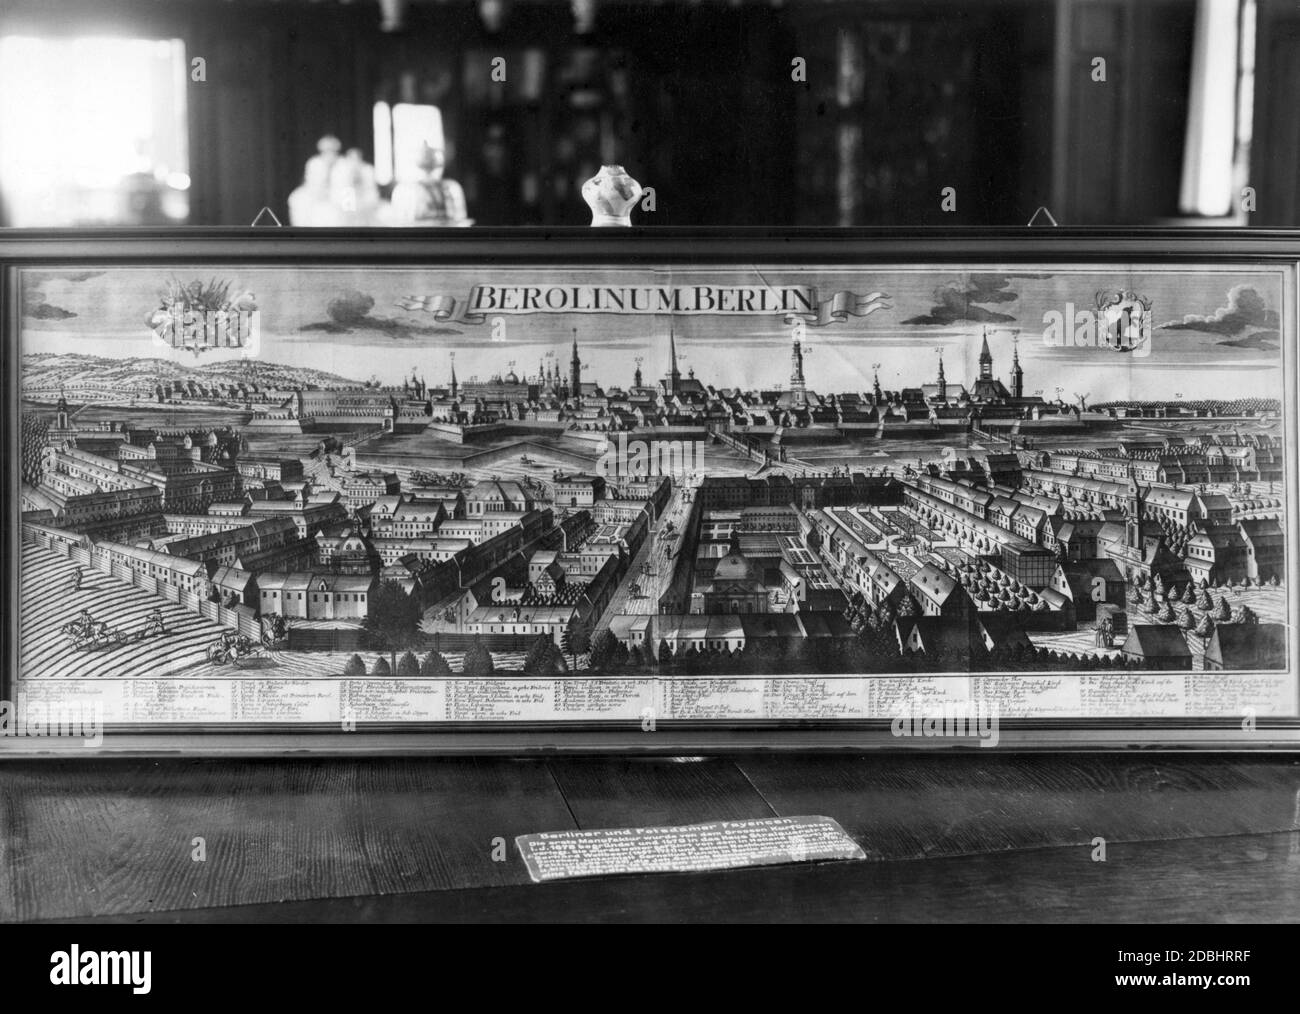 Dieser Kupferstich von G. B. Probst nach einer Zeichnung von F. I. Sauer zeigt eine Stadtansicht von Berlin. Die Gravur wurde vermutlich im 18. Jahrhundert angefertigt. Fotografiert im Maerkisches Museum 1937. Stockfoto